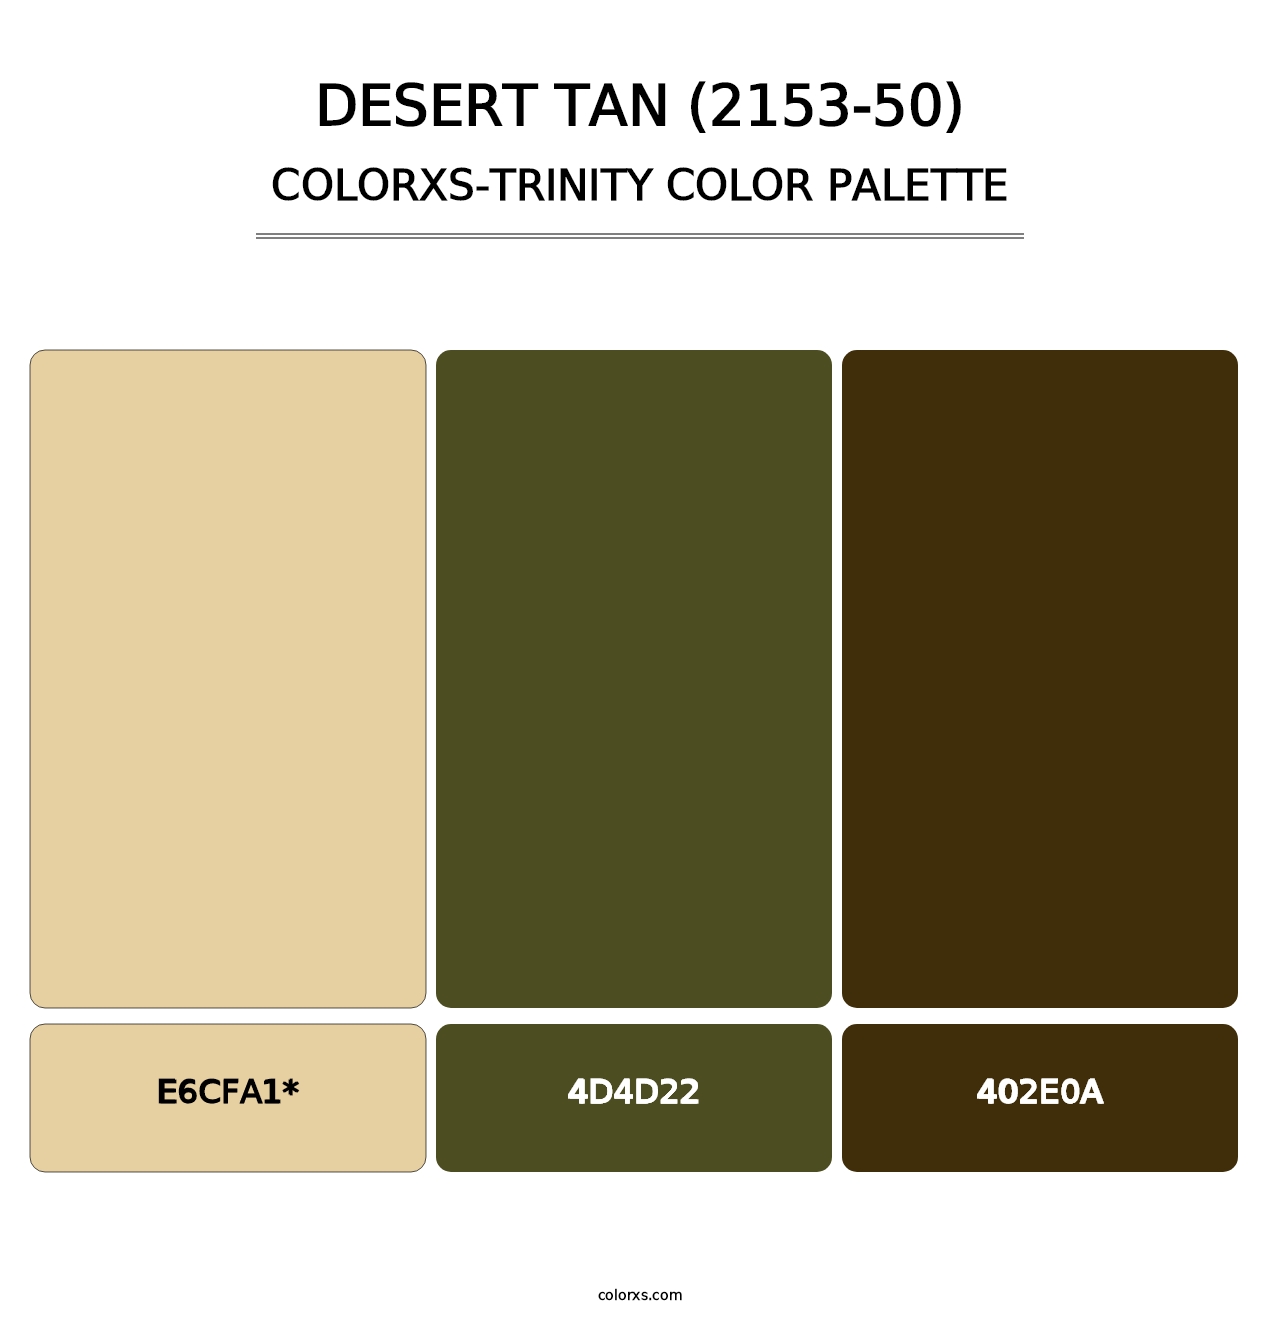 Desert Tan (2153-50) - Colorxs Trinity Palette